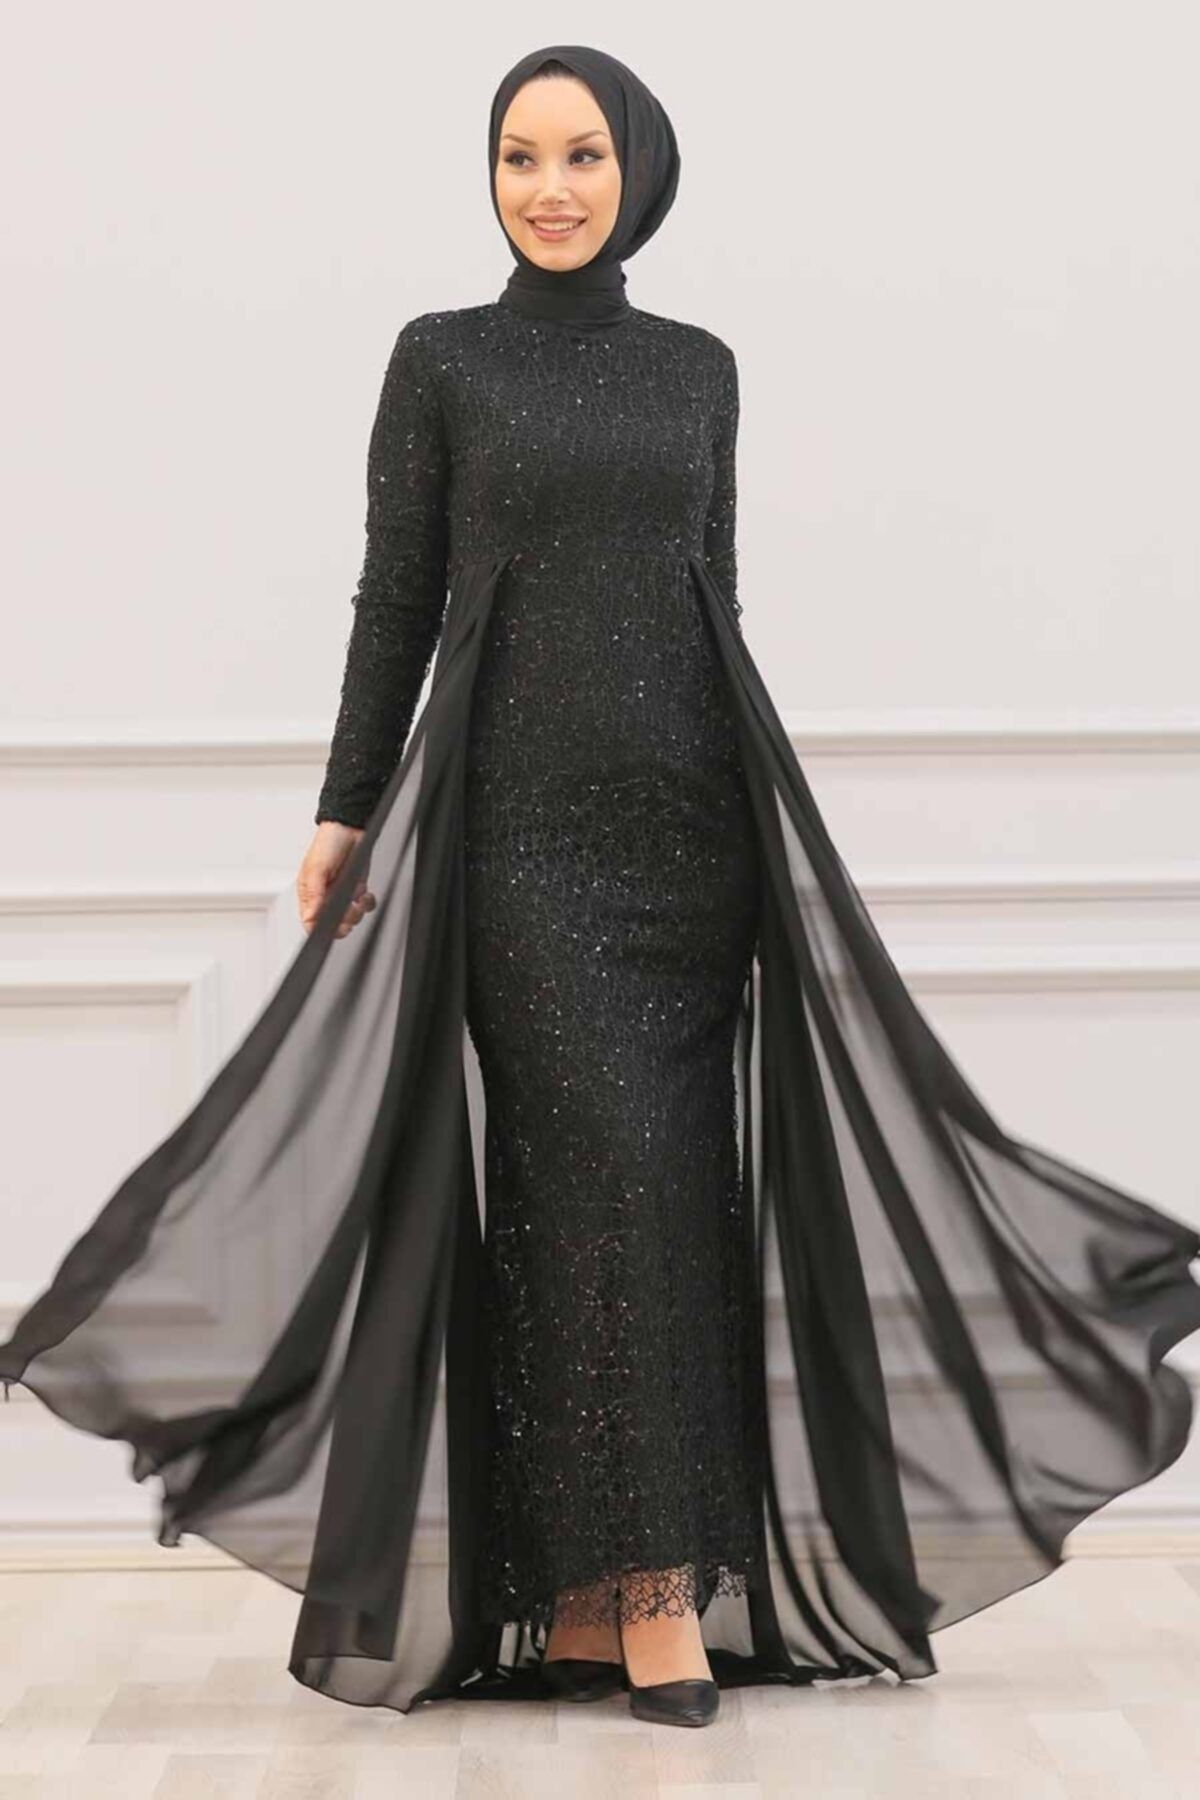 Nayla Collectıon Nayla Collection - Pullu Siyah Tesettür Abiye Elbise 90000s